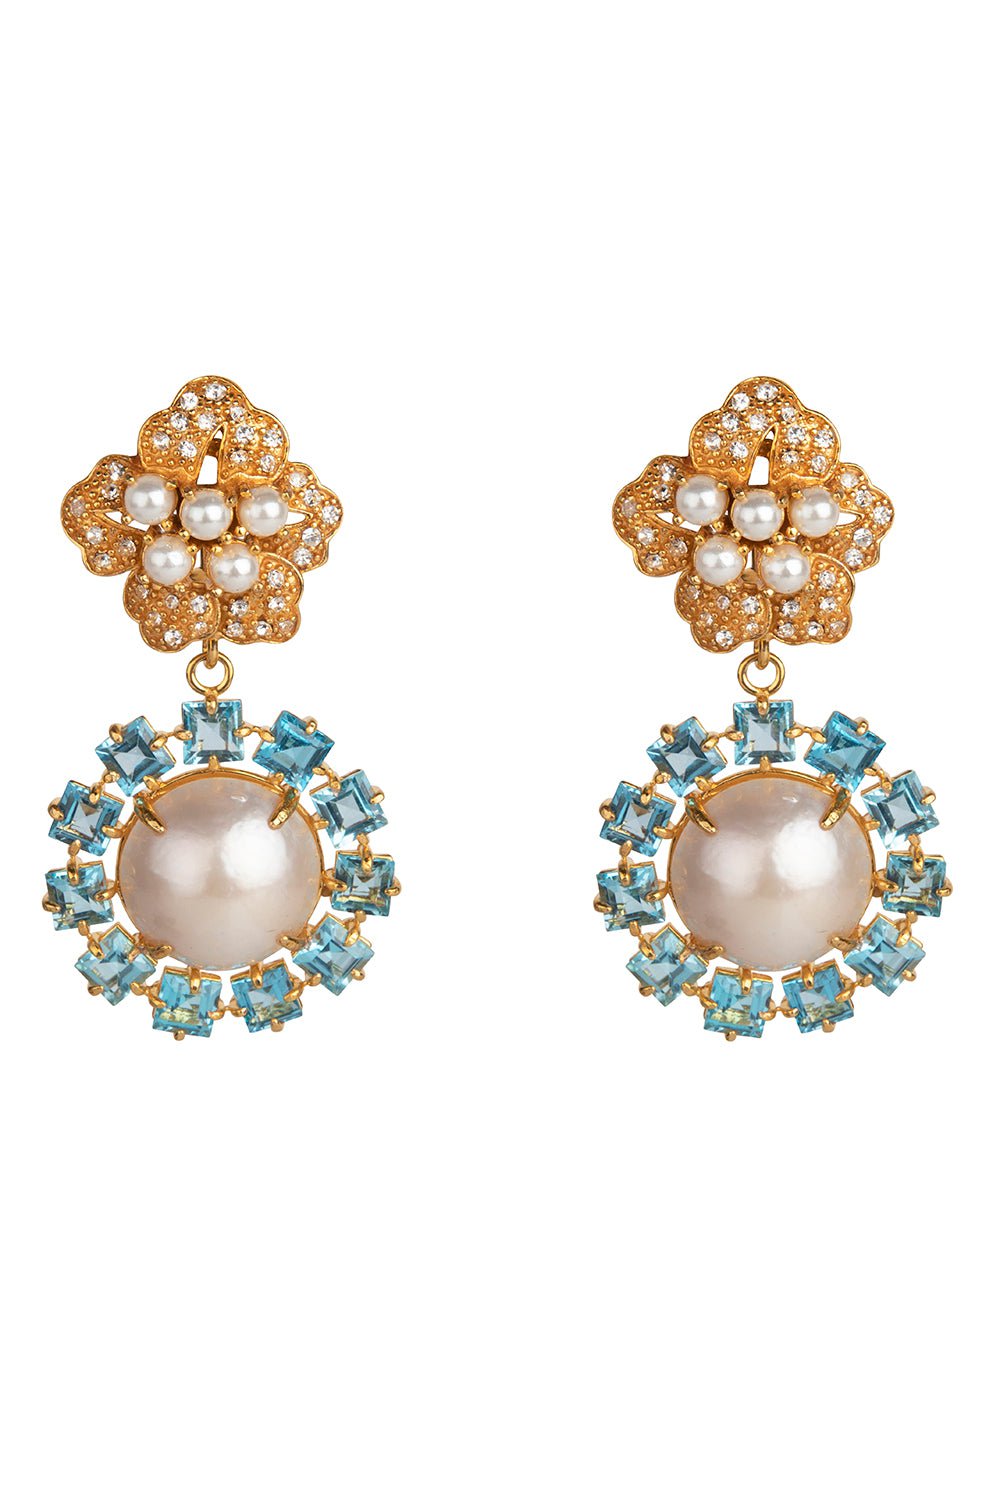 BOUNKIT JEWELRY-Blue Topaz Pearl Flower Earrings-WHITE